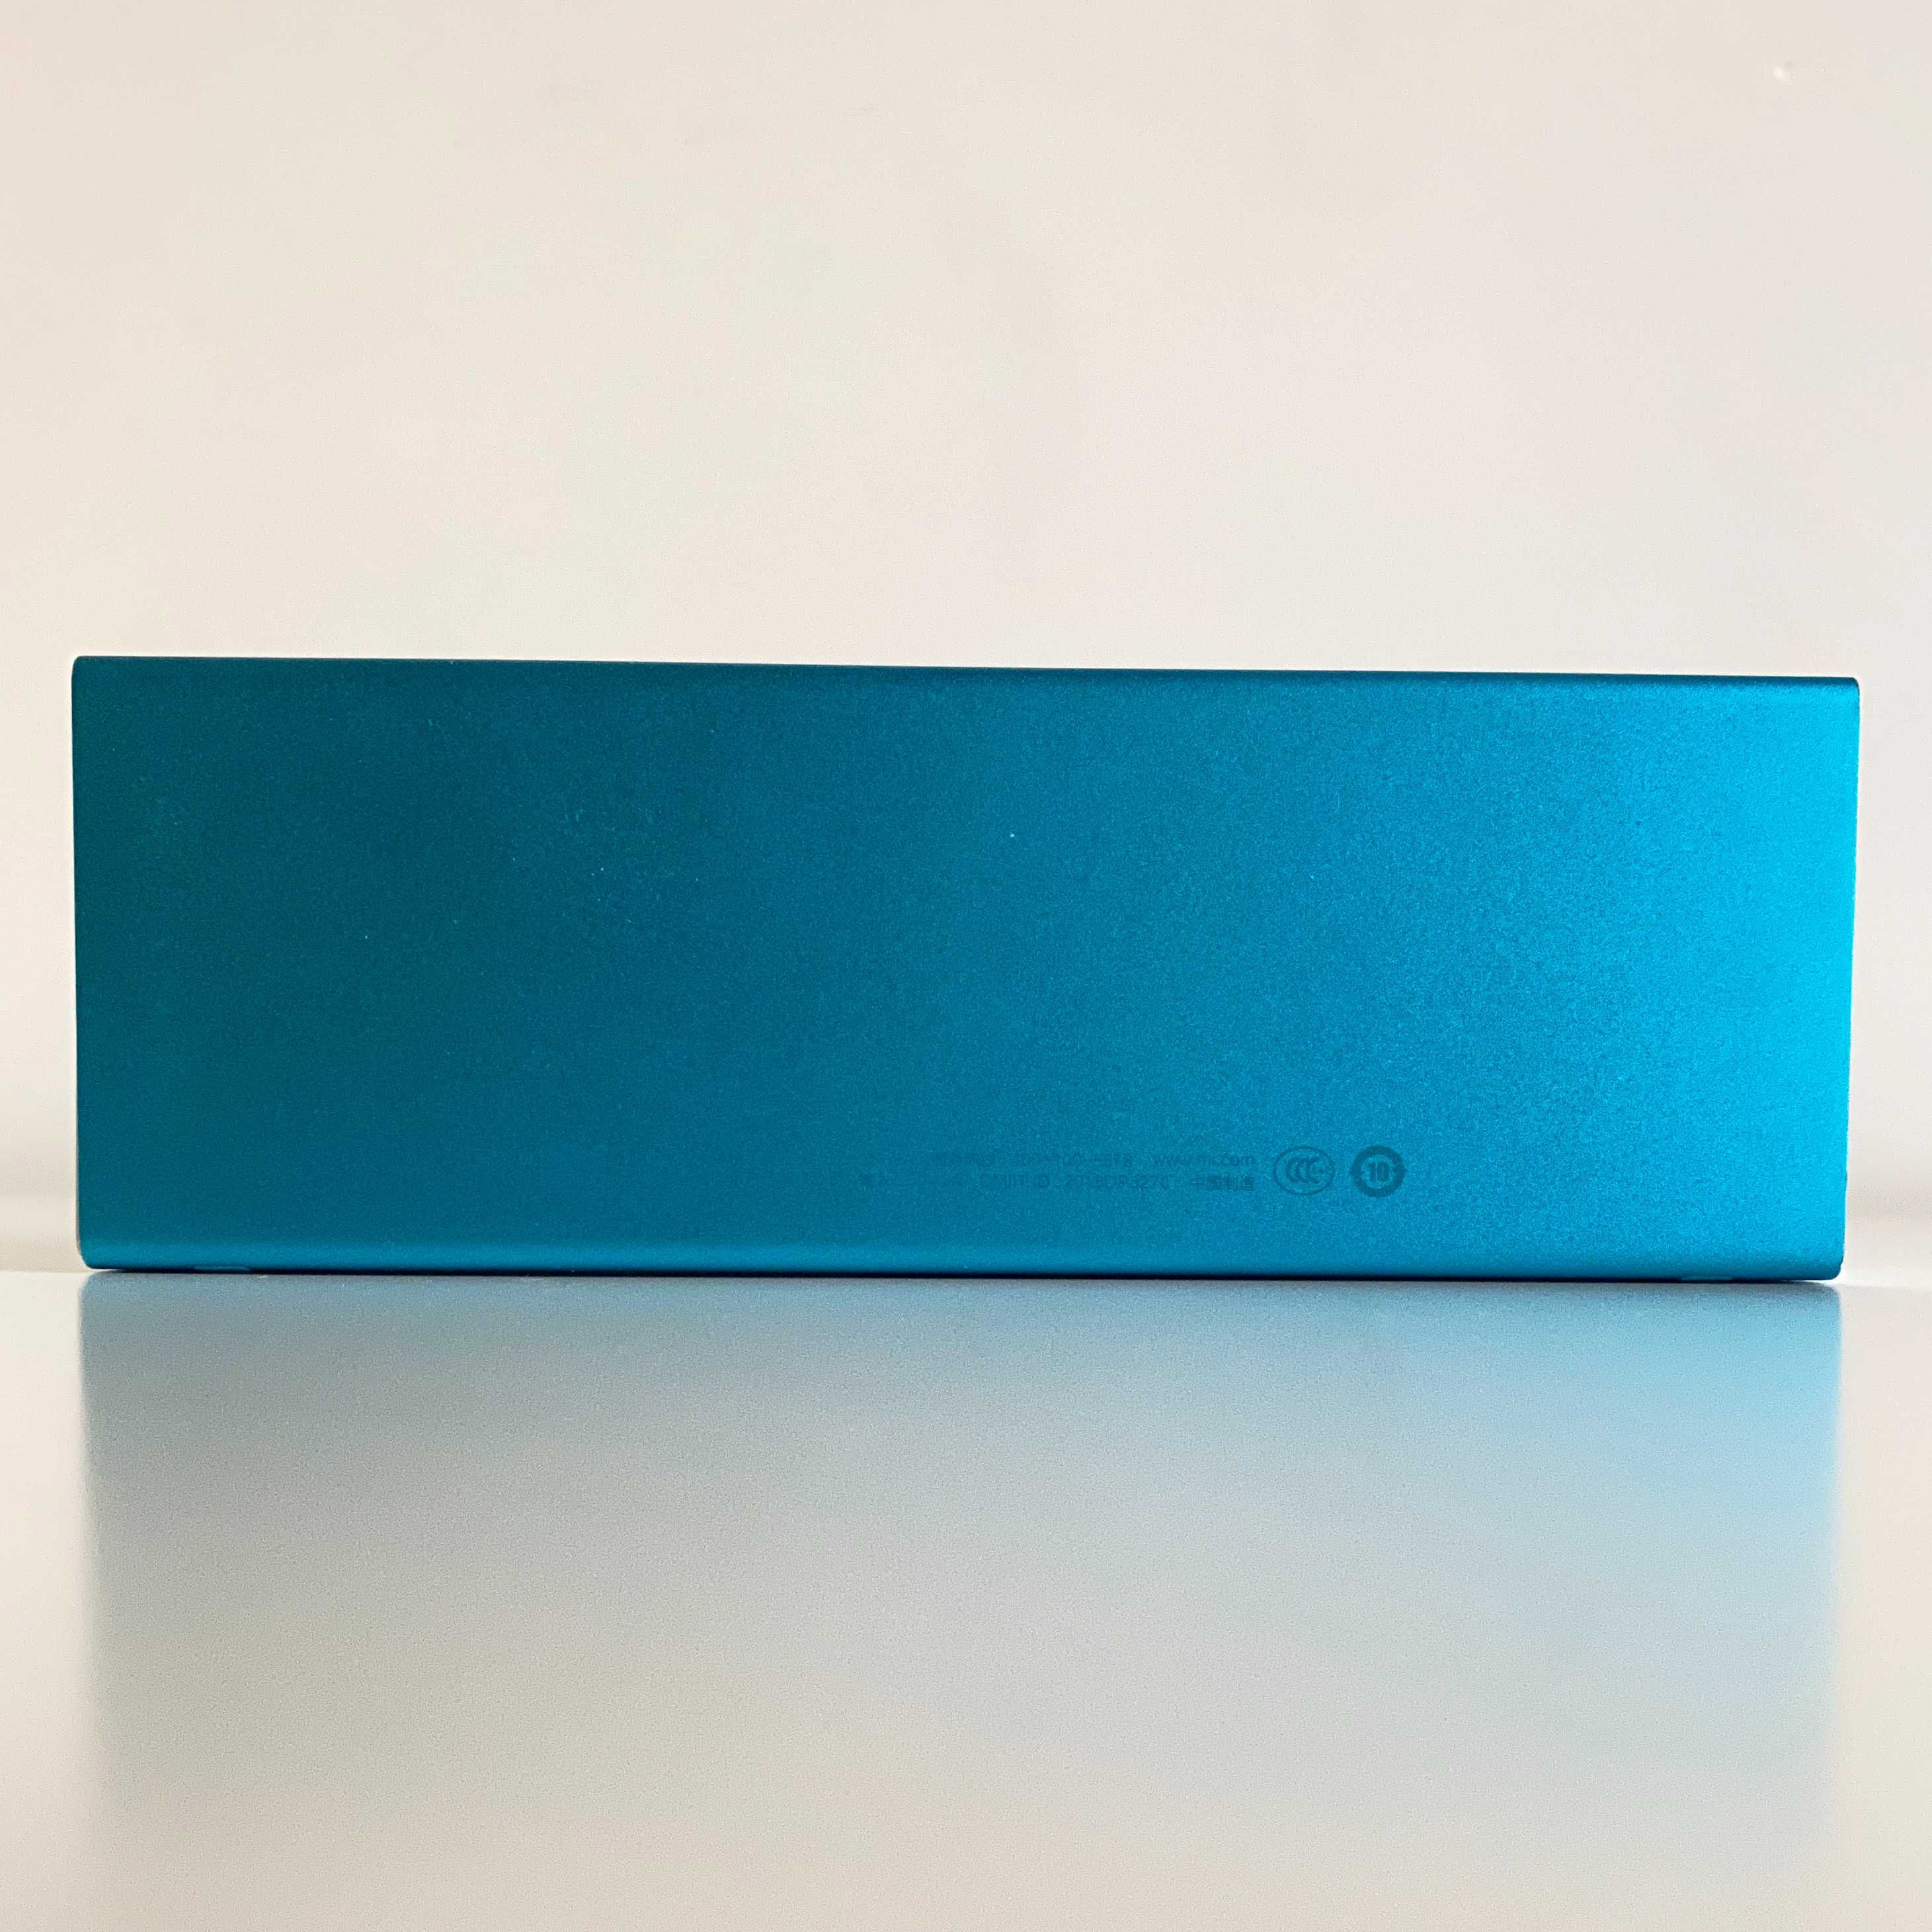 Głośnik Xiaomi MI MDZ-26-DB, kolor niebieski. Bluetooth Speaker